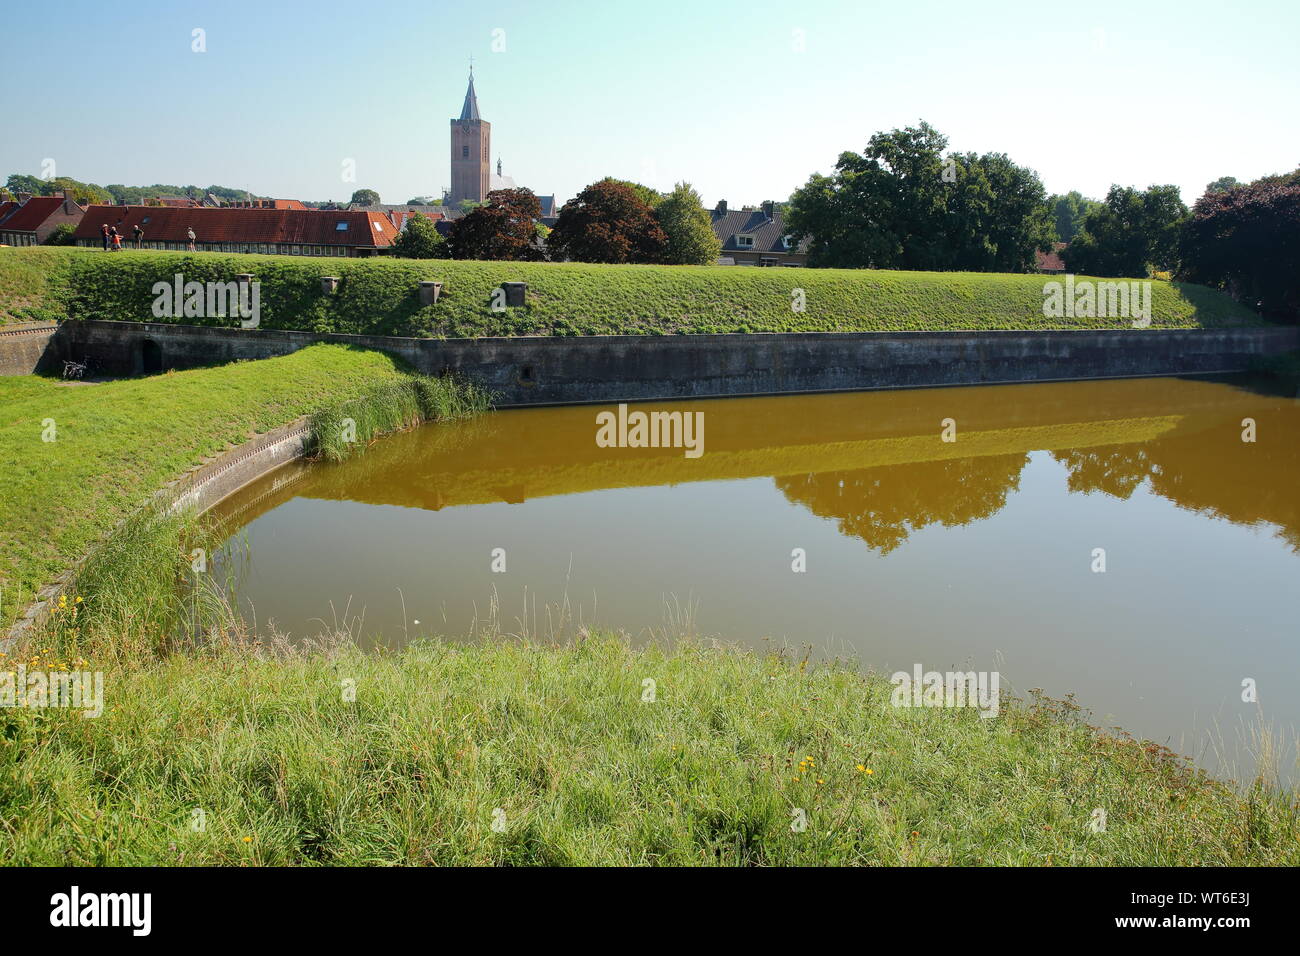 Le fortificazioni e fossati della città di Naarden, Paesi Bassi, con il Grote Kerk chiesa in background Foto Stock